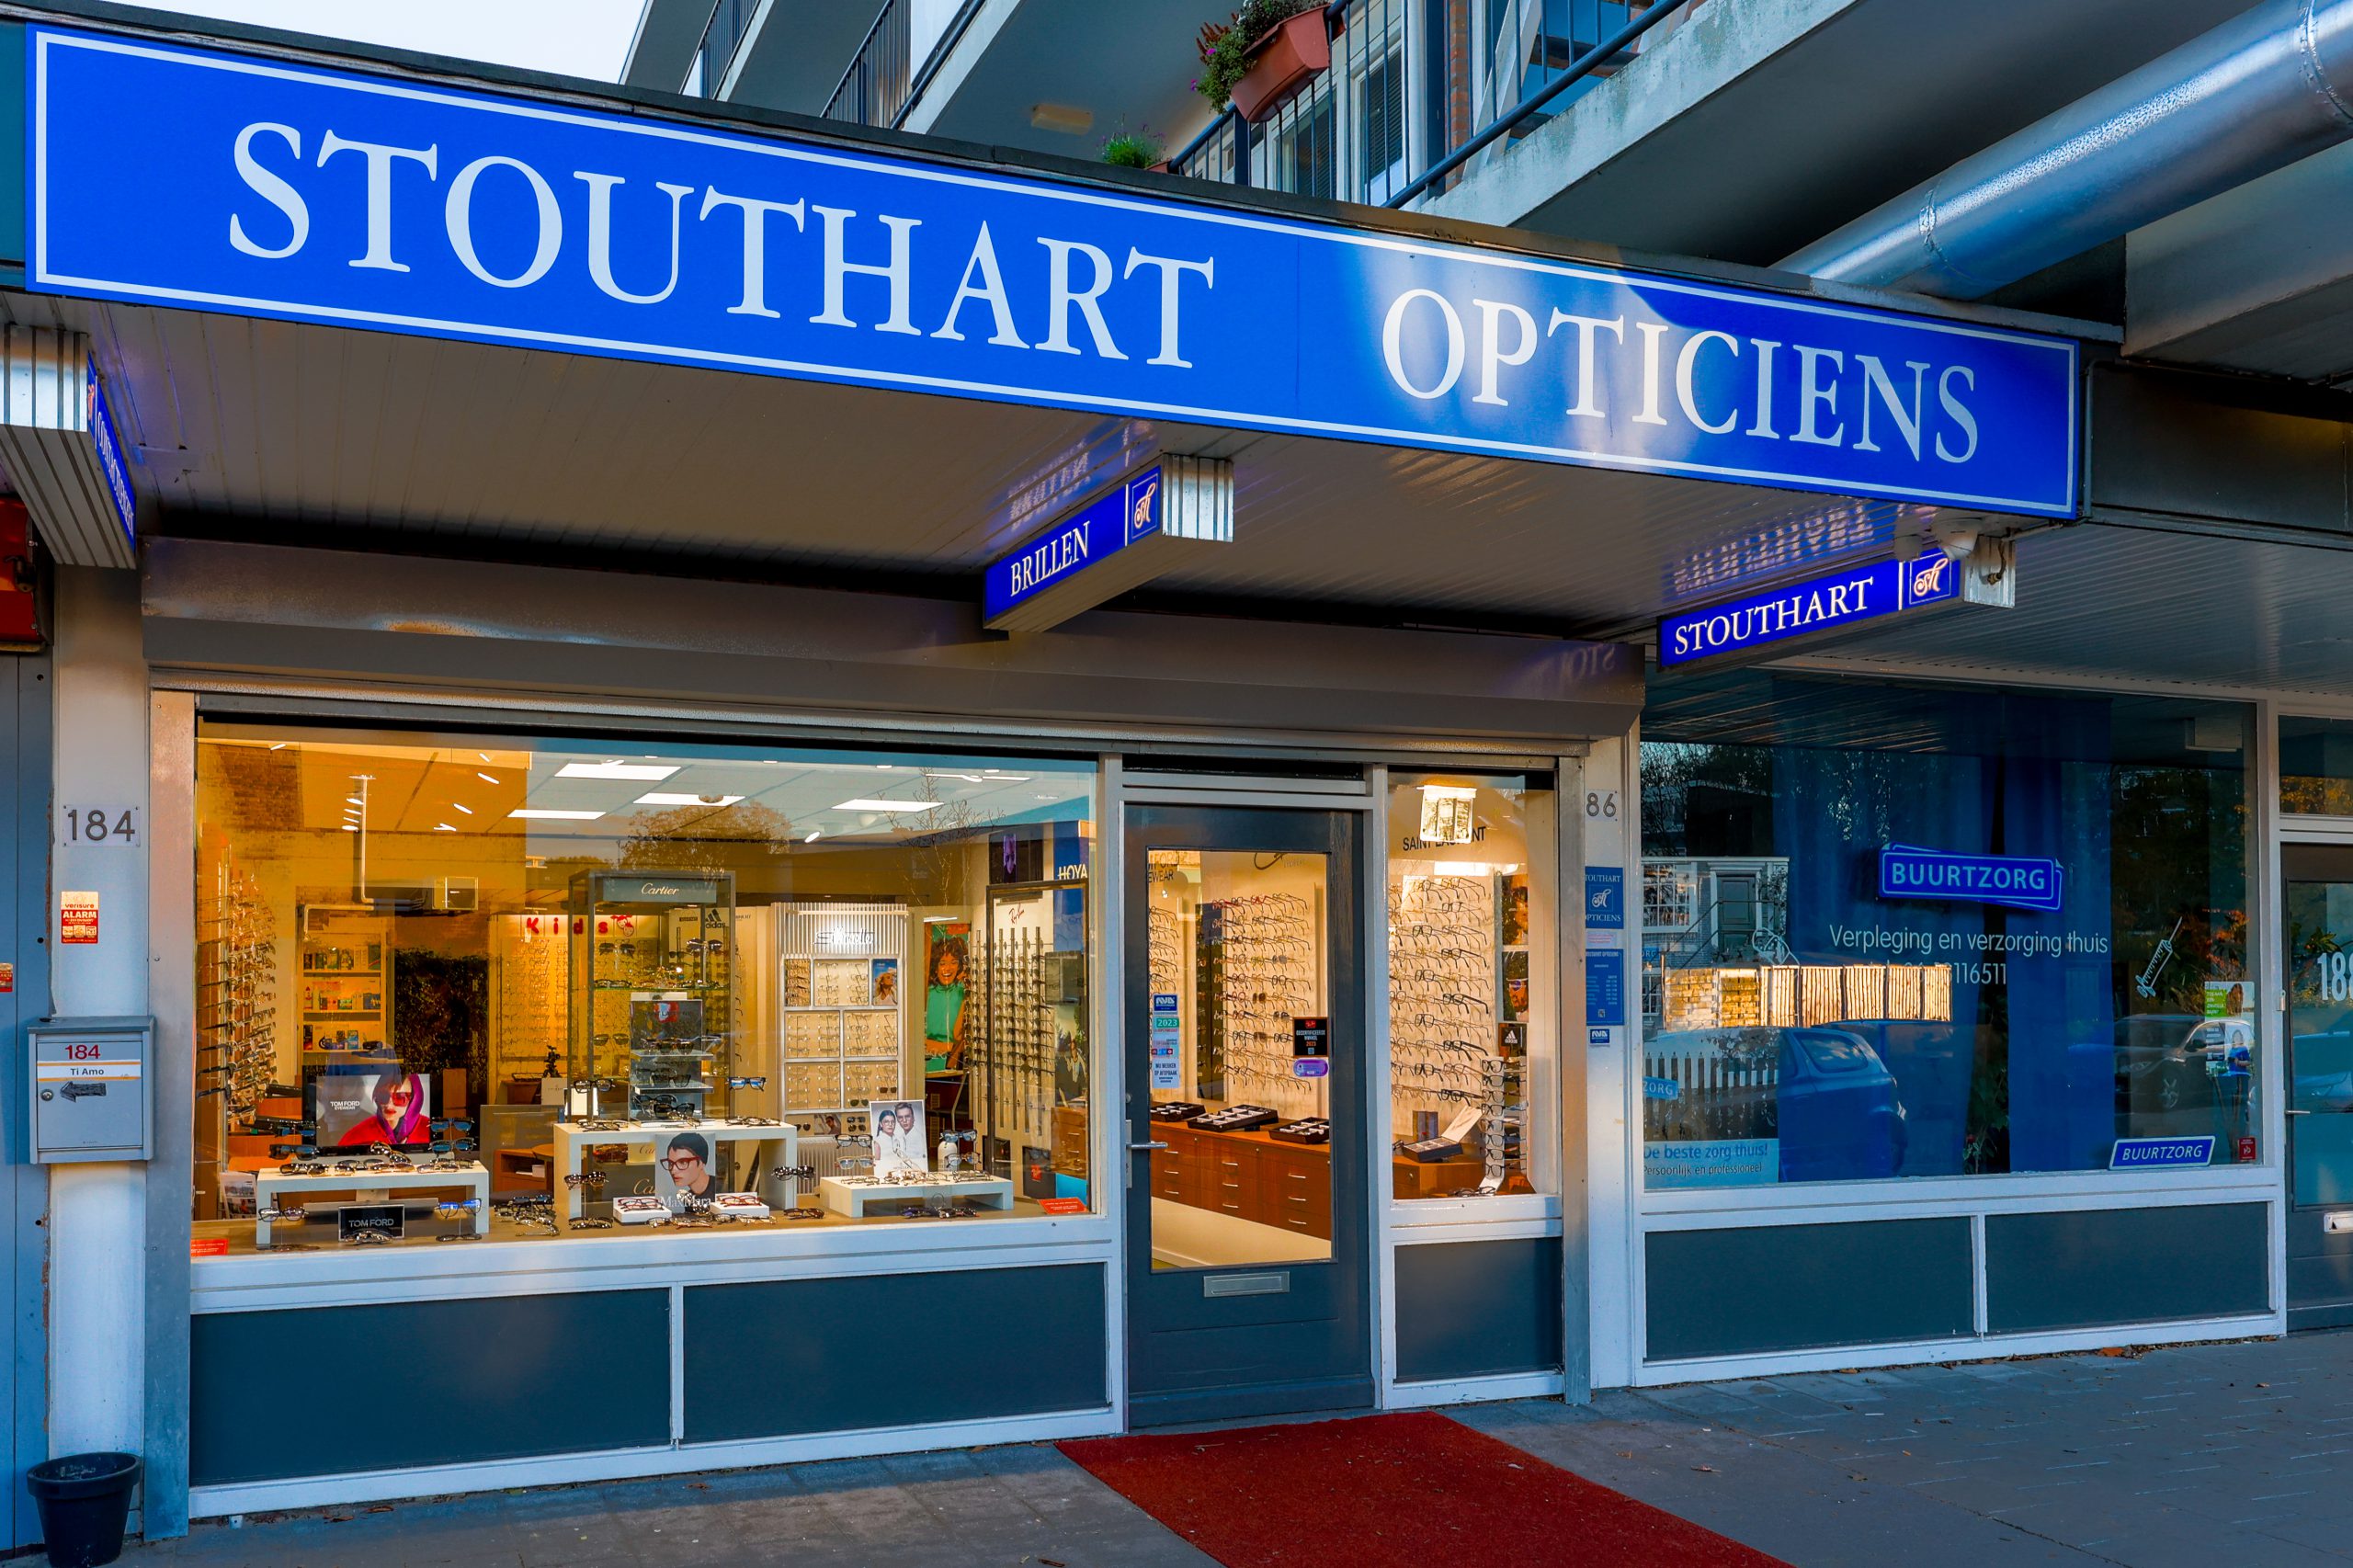 Vooraanzicht winkel Stouthart Opticiens in Rotterdam-zuid. Zenostraat.